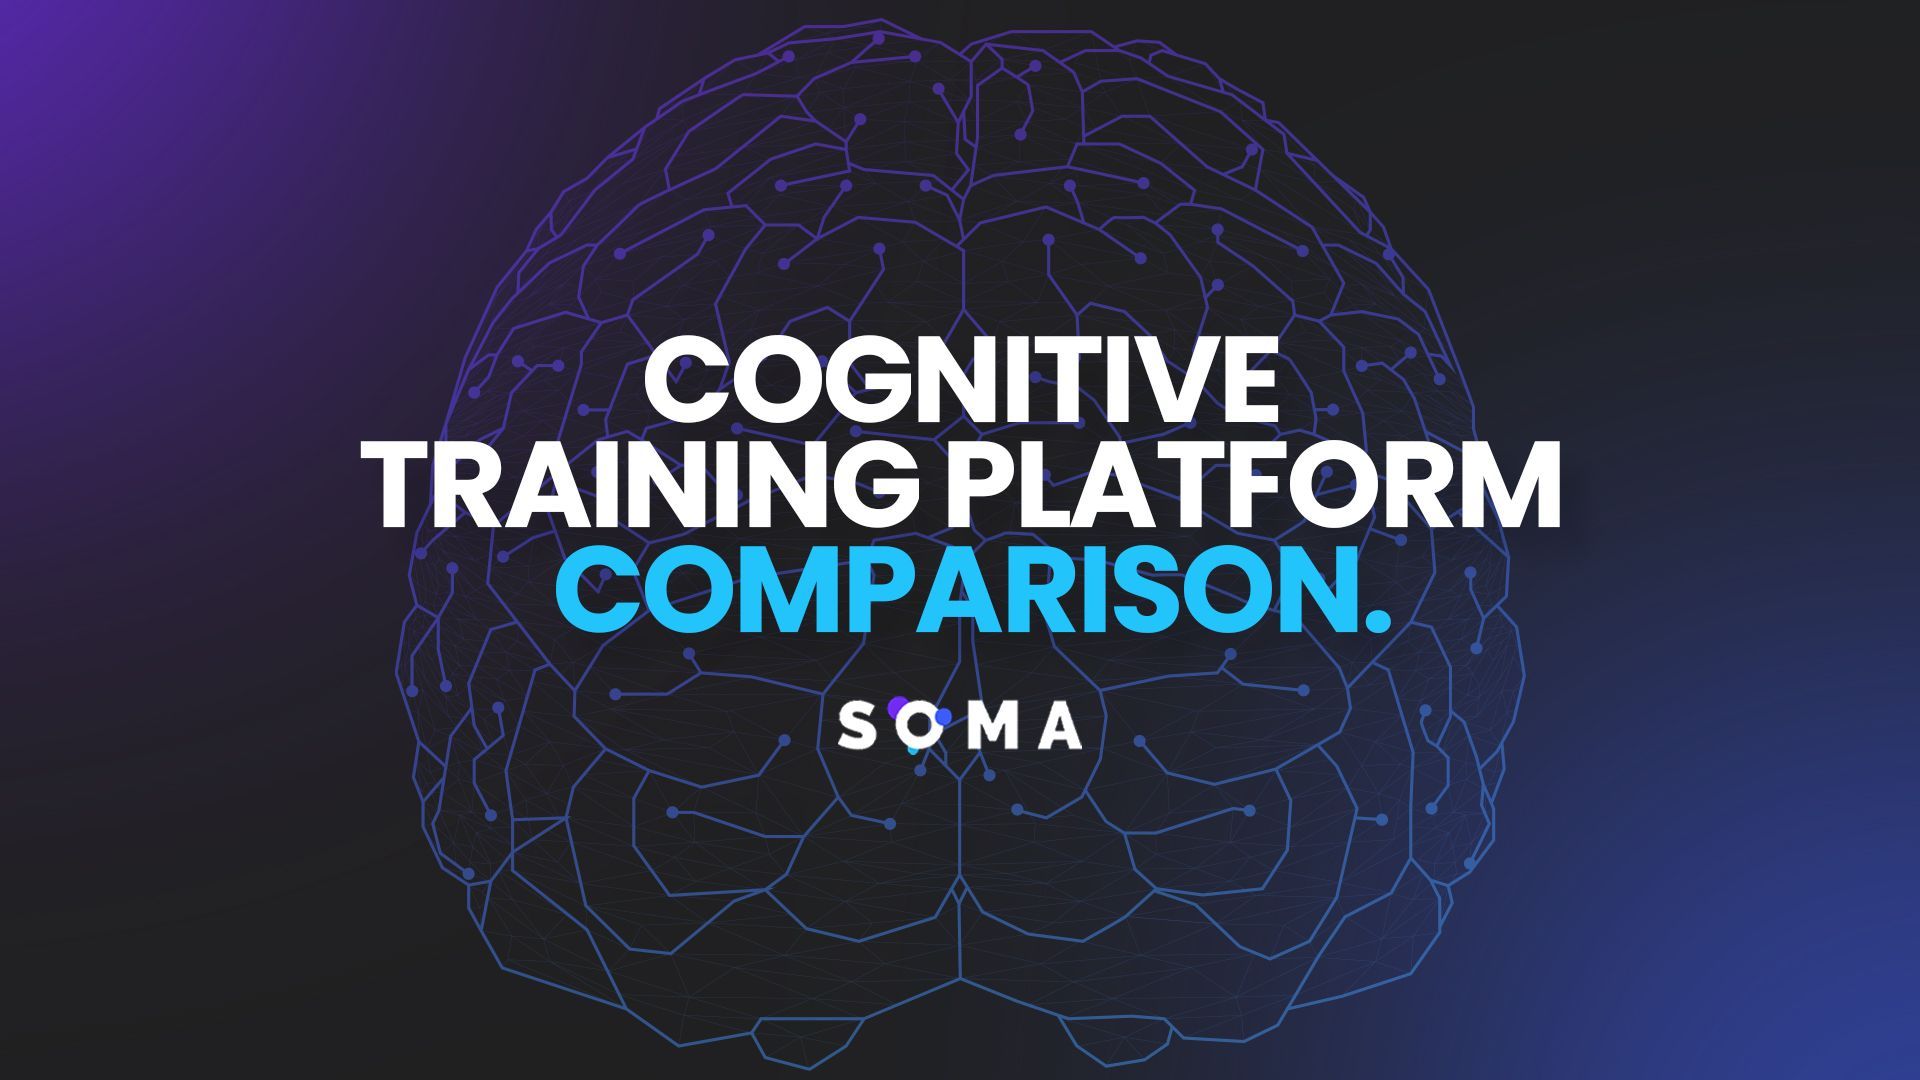 Cognitive Training Platform Comparison.